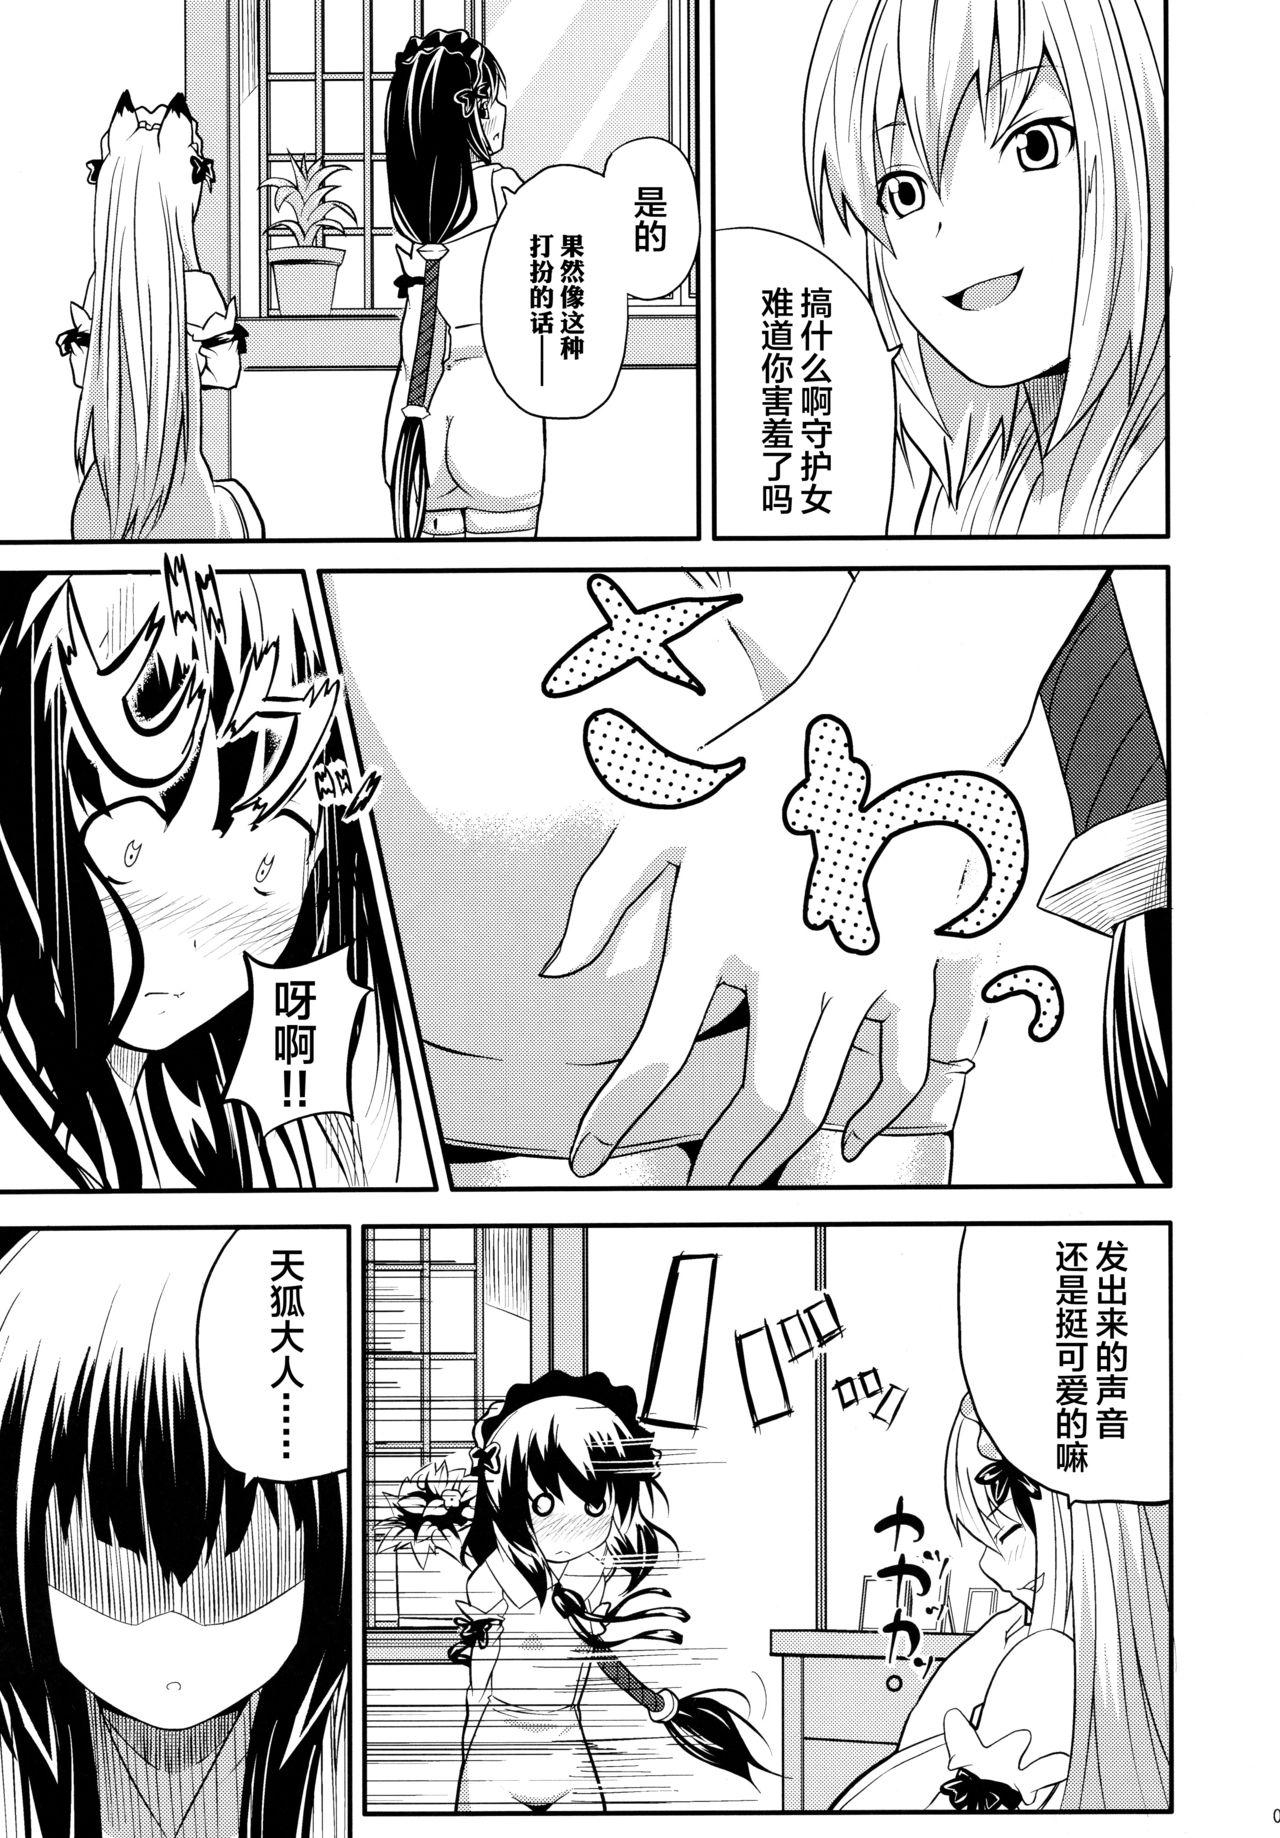 Riding Hare, Tokidoki Oinari-sama 4 - Wagaya no oinari-sama Teacher - Page 7